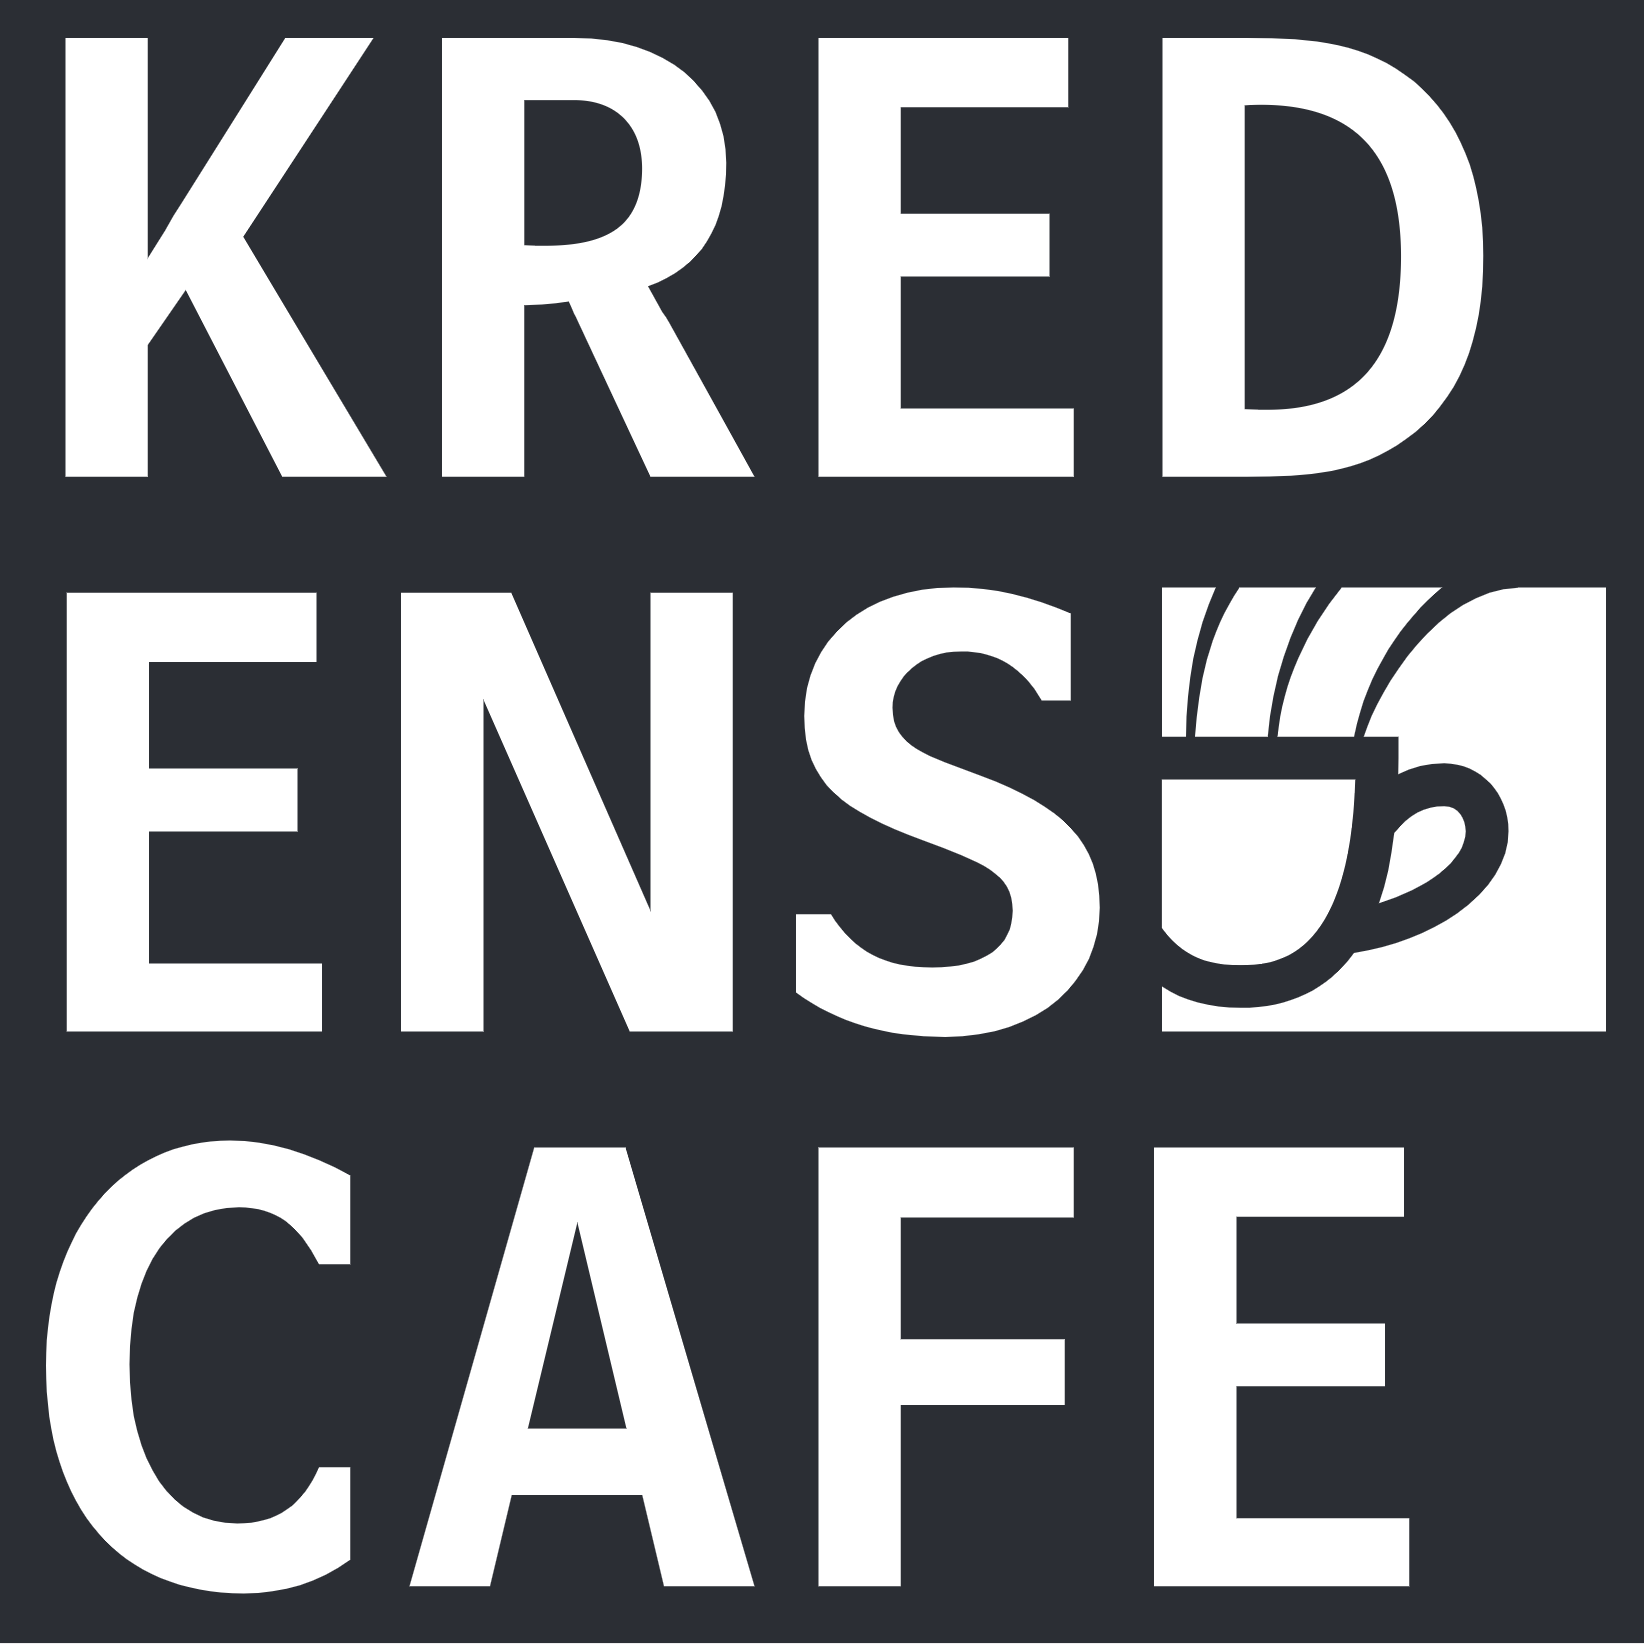 Kredens Cafe